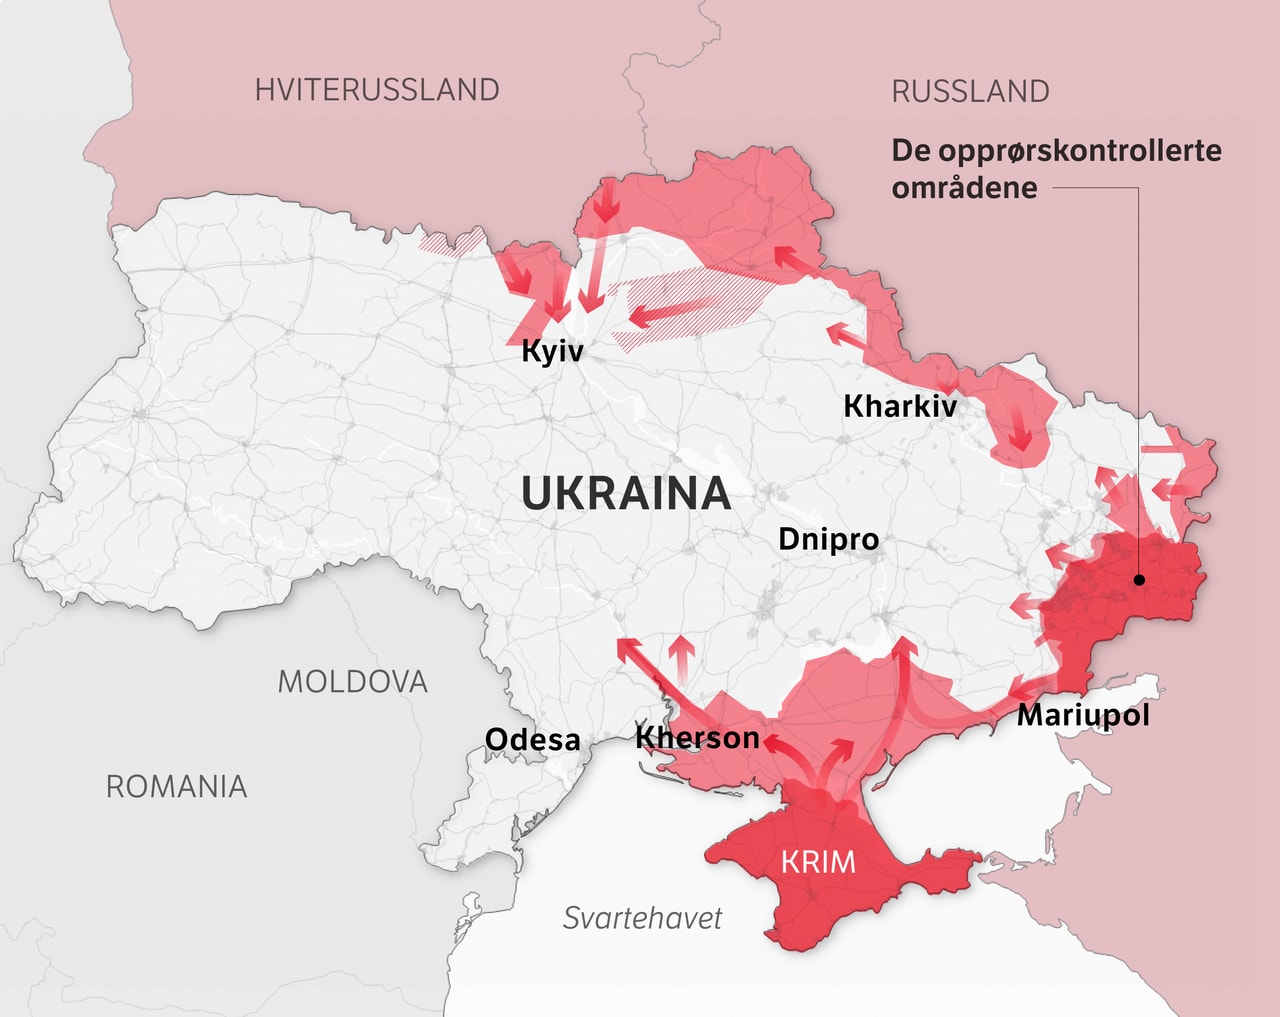 La mappa dell'Ucraina presuppone l'anticipo russo 0603